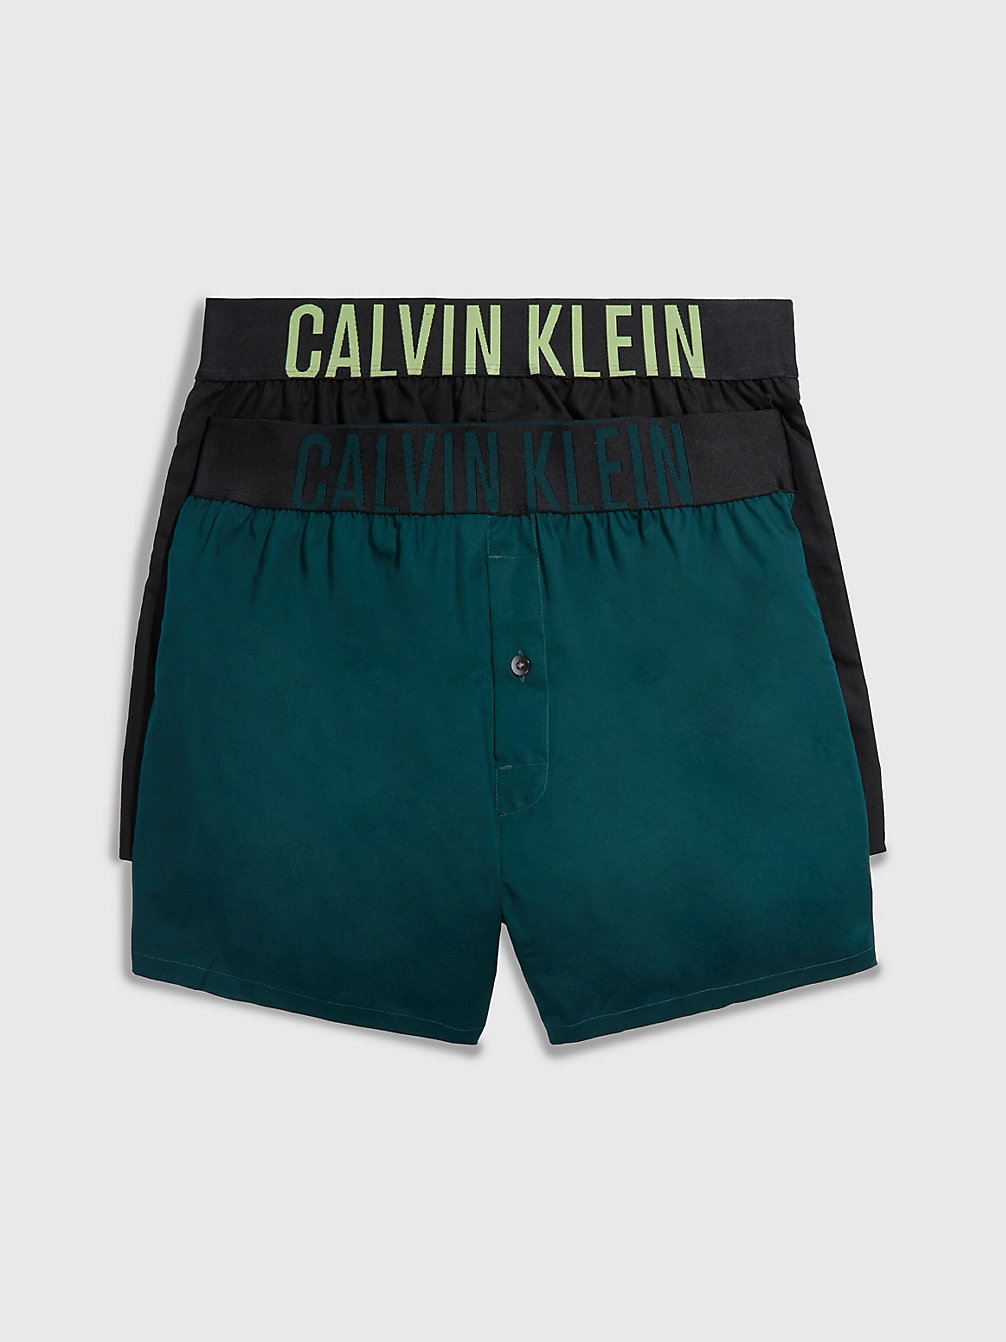 B-TROPIC LIME, PONDEROSA PINE Lot De 2 Caleçons Slim Fit - Intense Power undefined hommes Calvin Klein